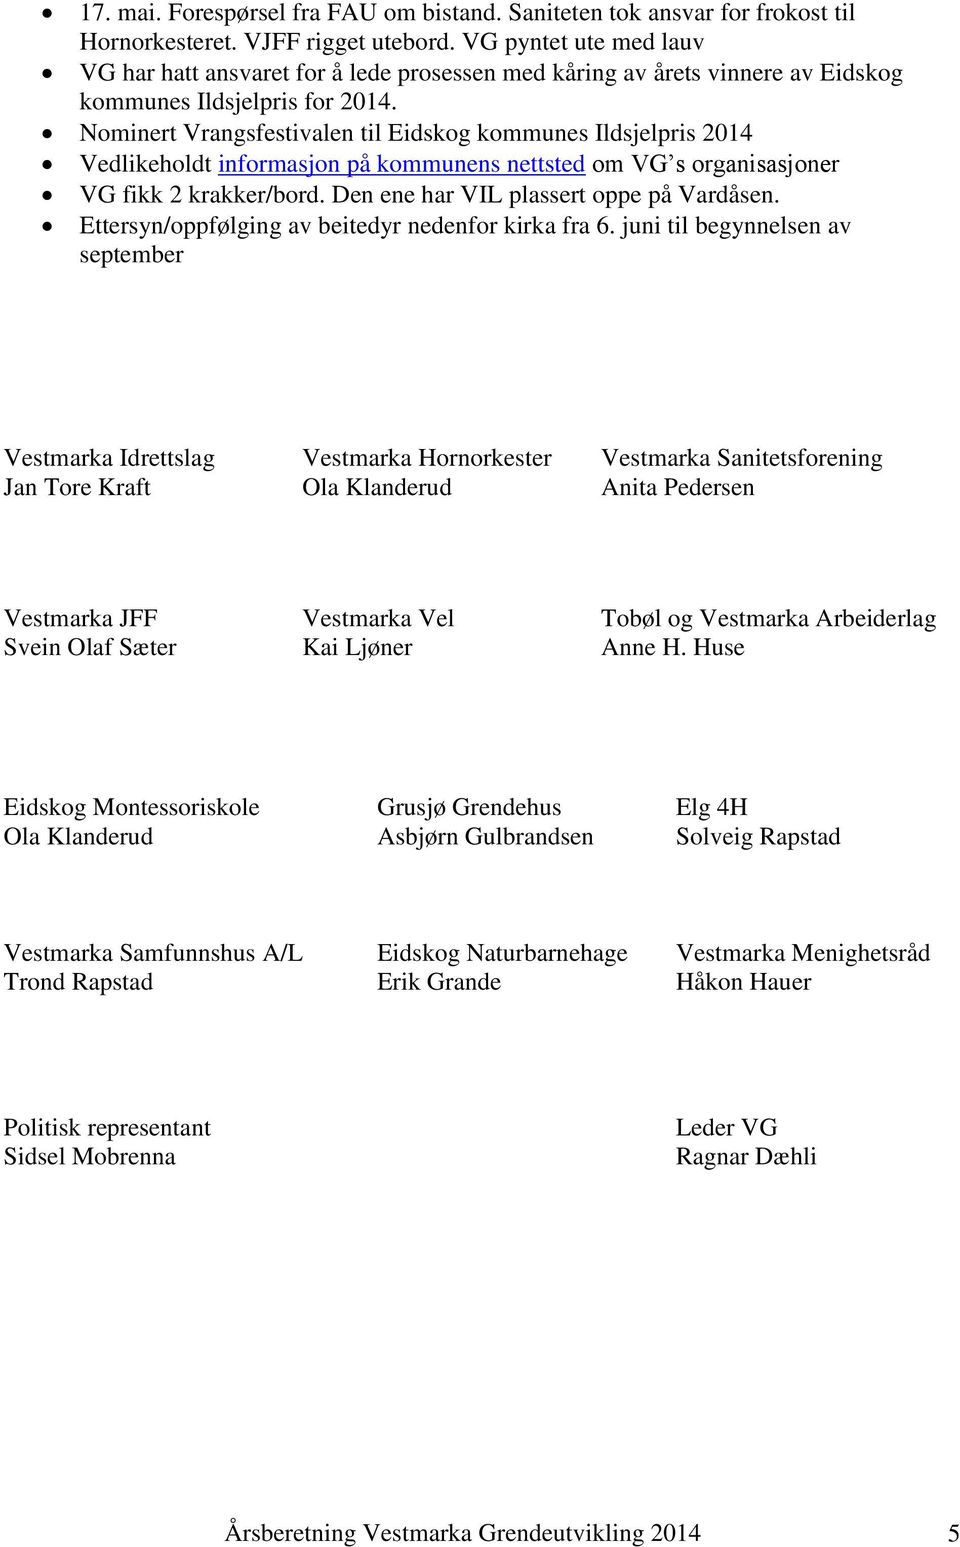 Nominert Vrangsfestivalen til Eidskog kommunes Ildsjelpris 2014 Vedlikeholdt informasjon på kommunens nettsted om VG s organisasjoner VG fikk 2 krakker/bord. Den ene har VIL plassert oppe på Vardåsen.